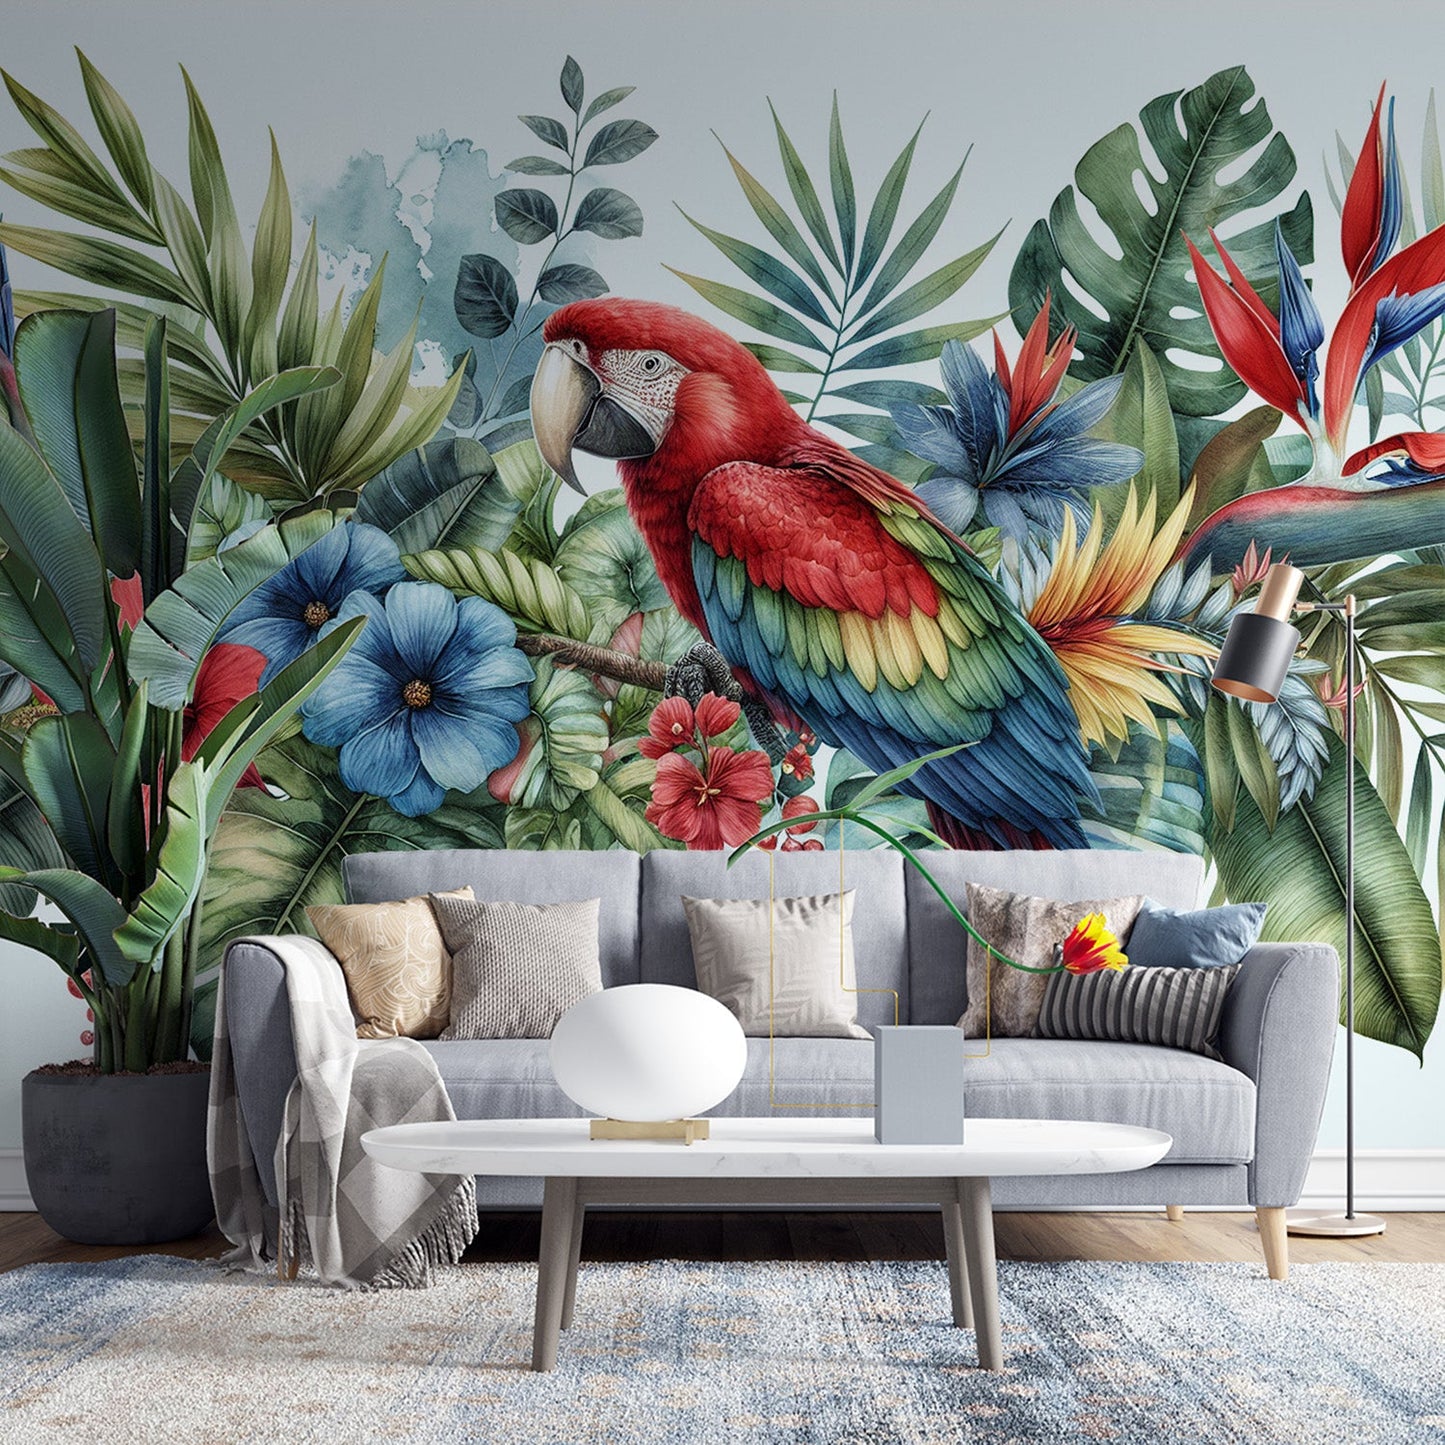 Tapete Papagei | Blätter und bunter Papagei auf hellem blauem Hintergrund